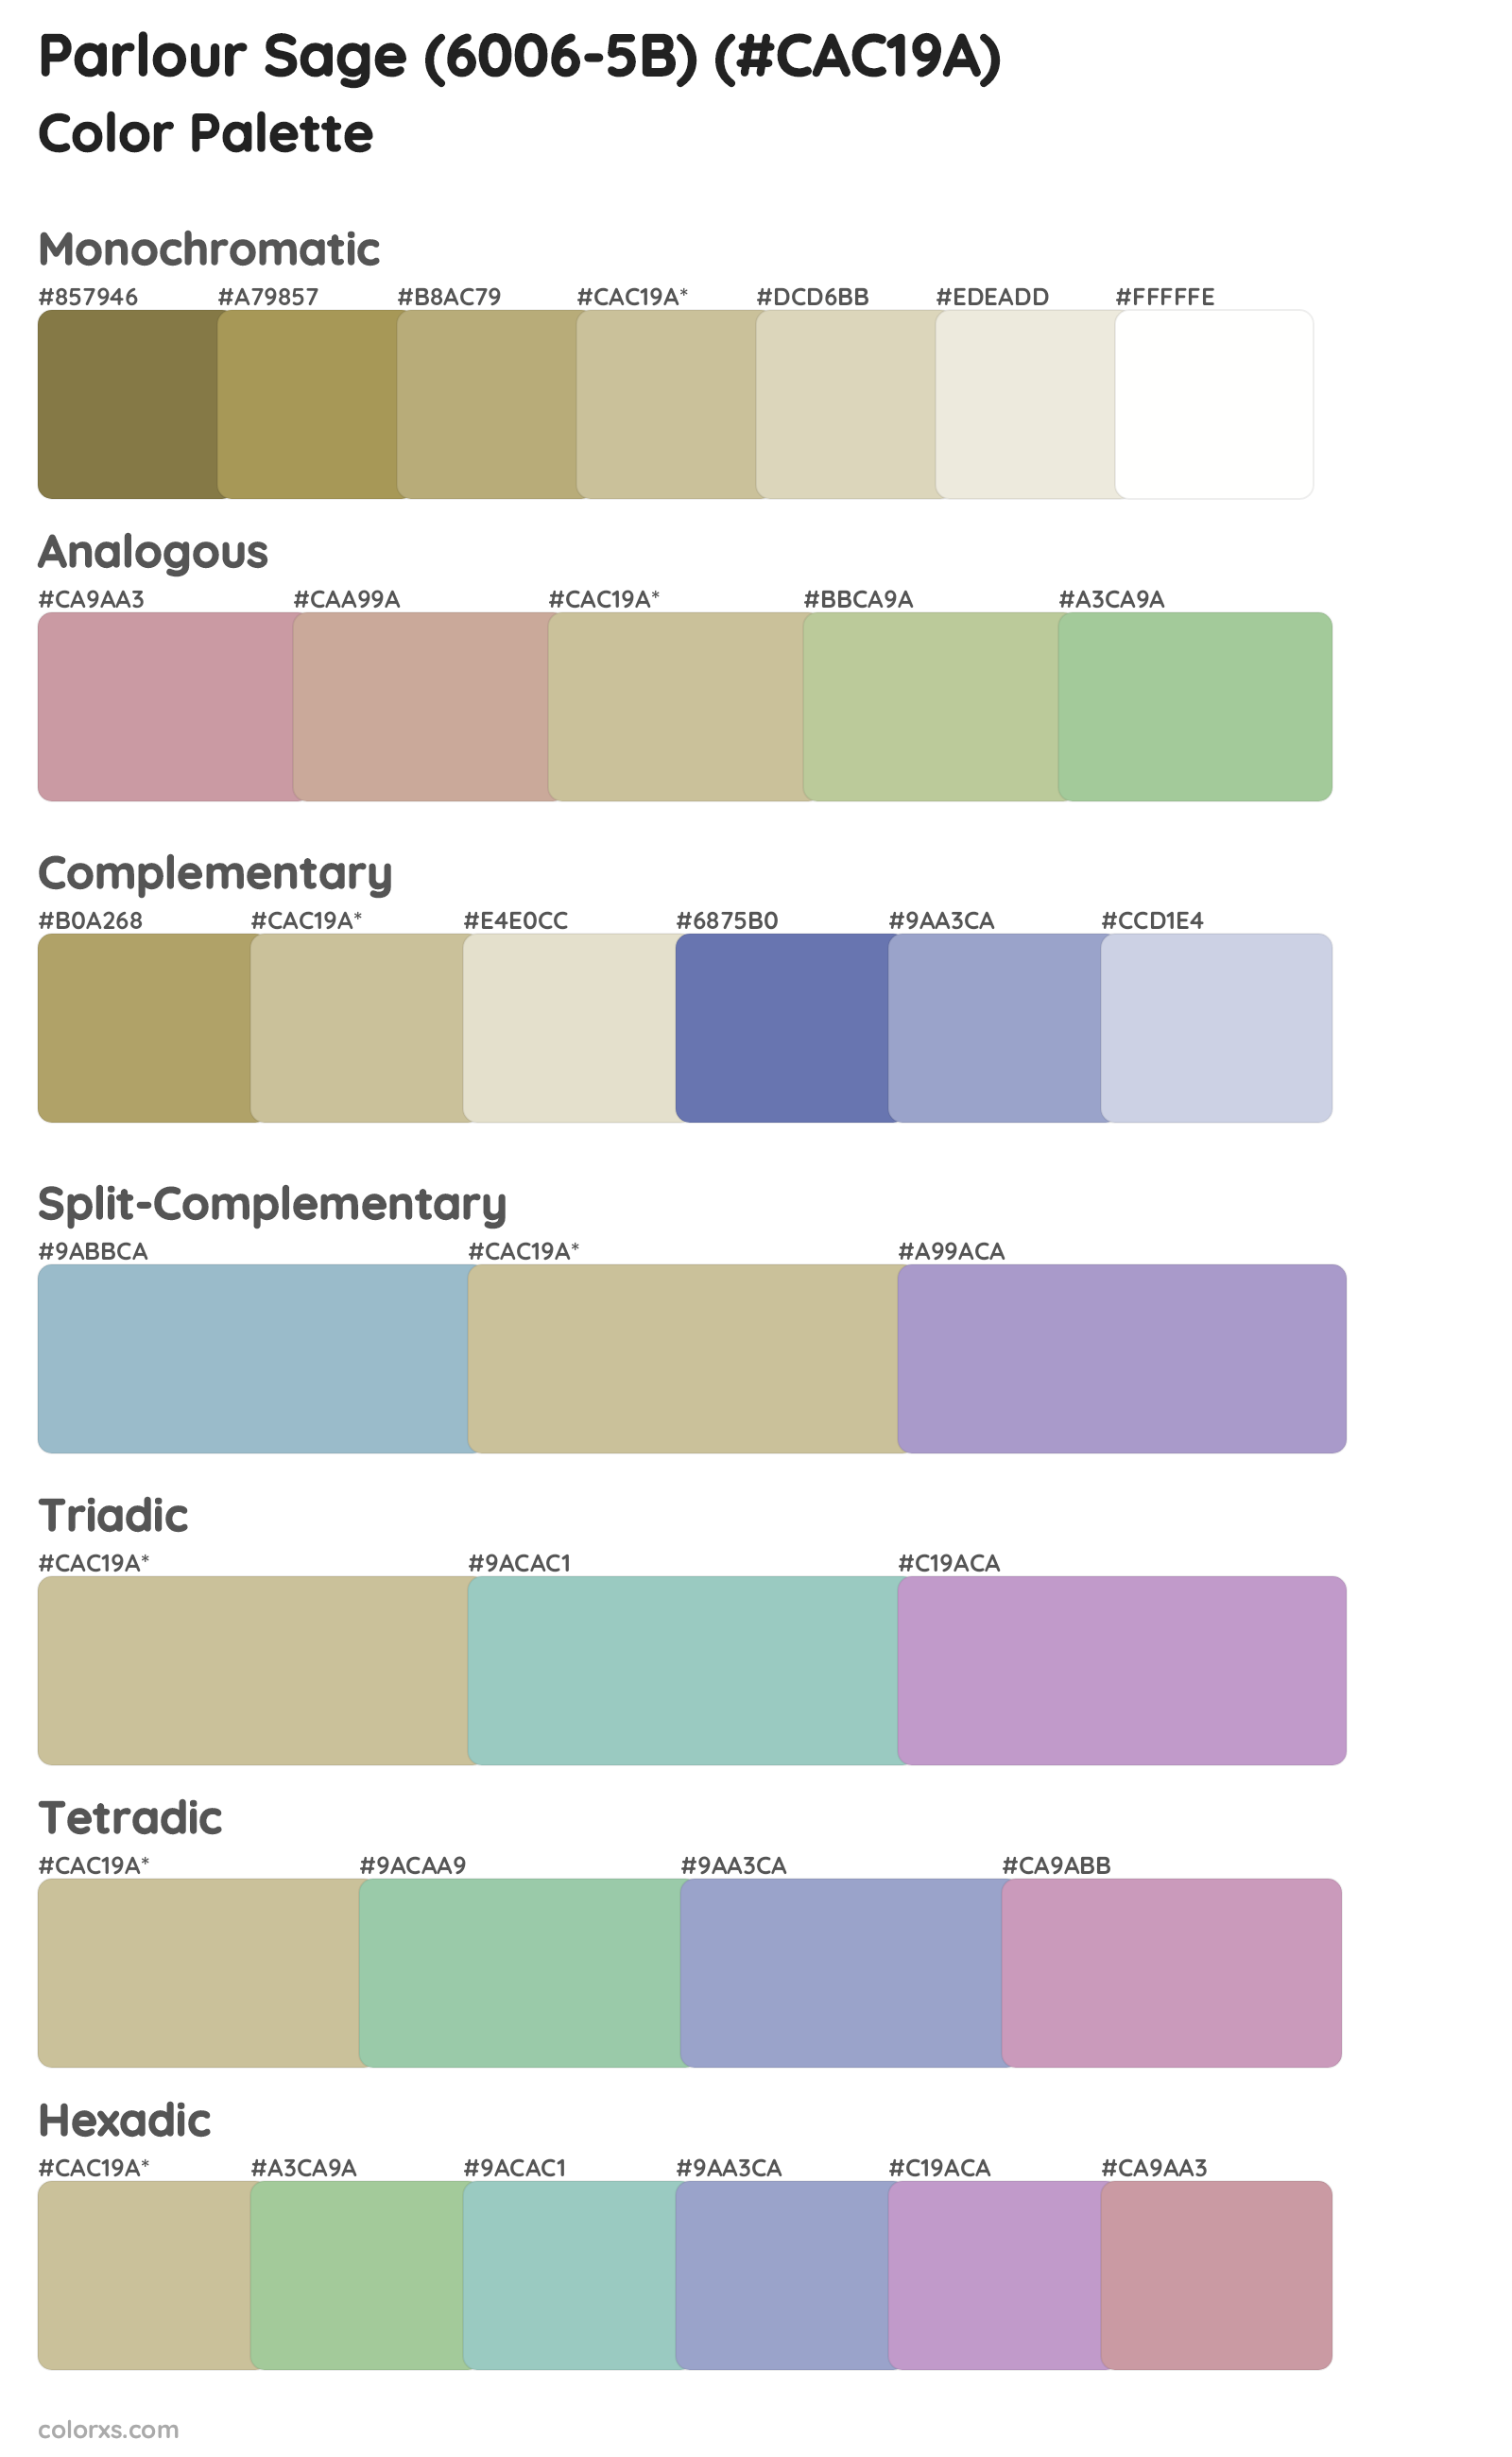 Parlour Sage (6006-5B) Color Scheme Palettes